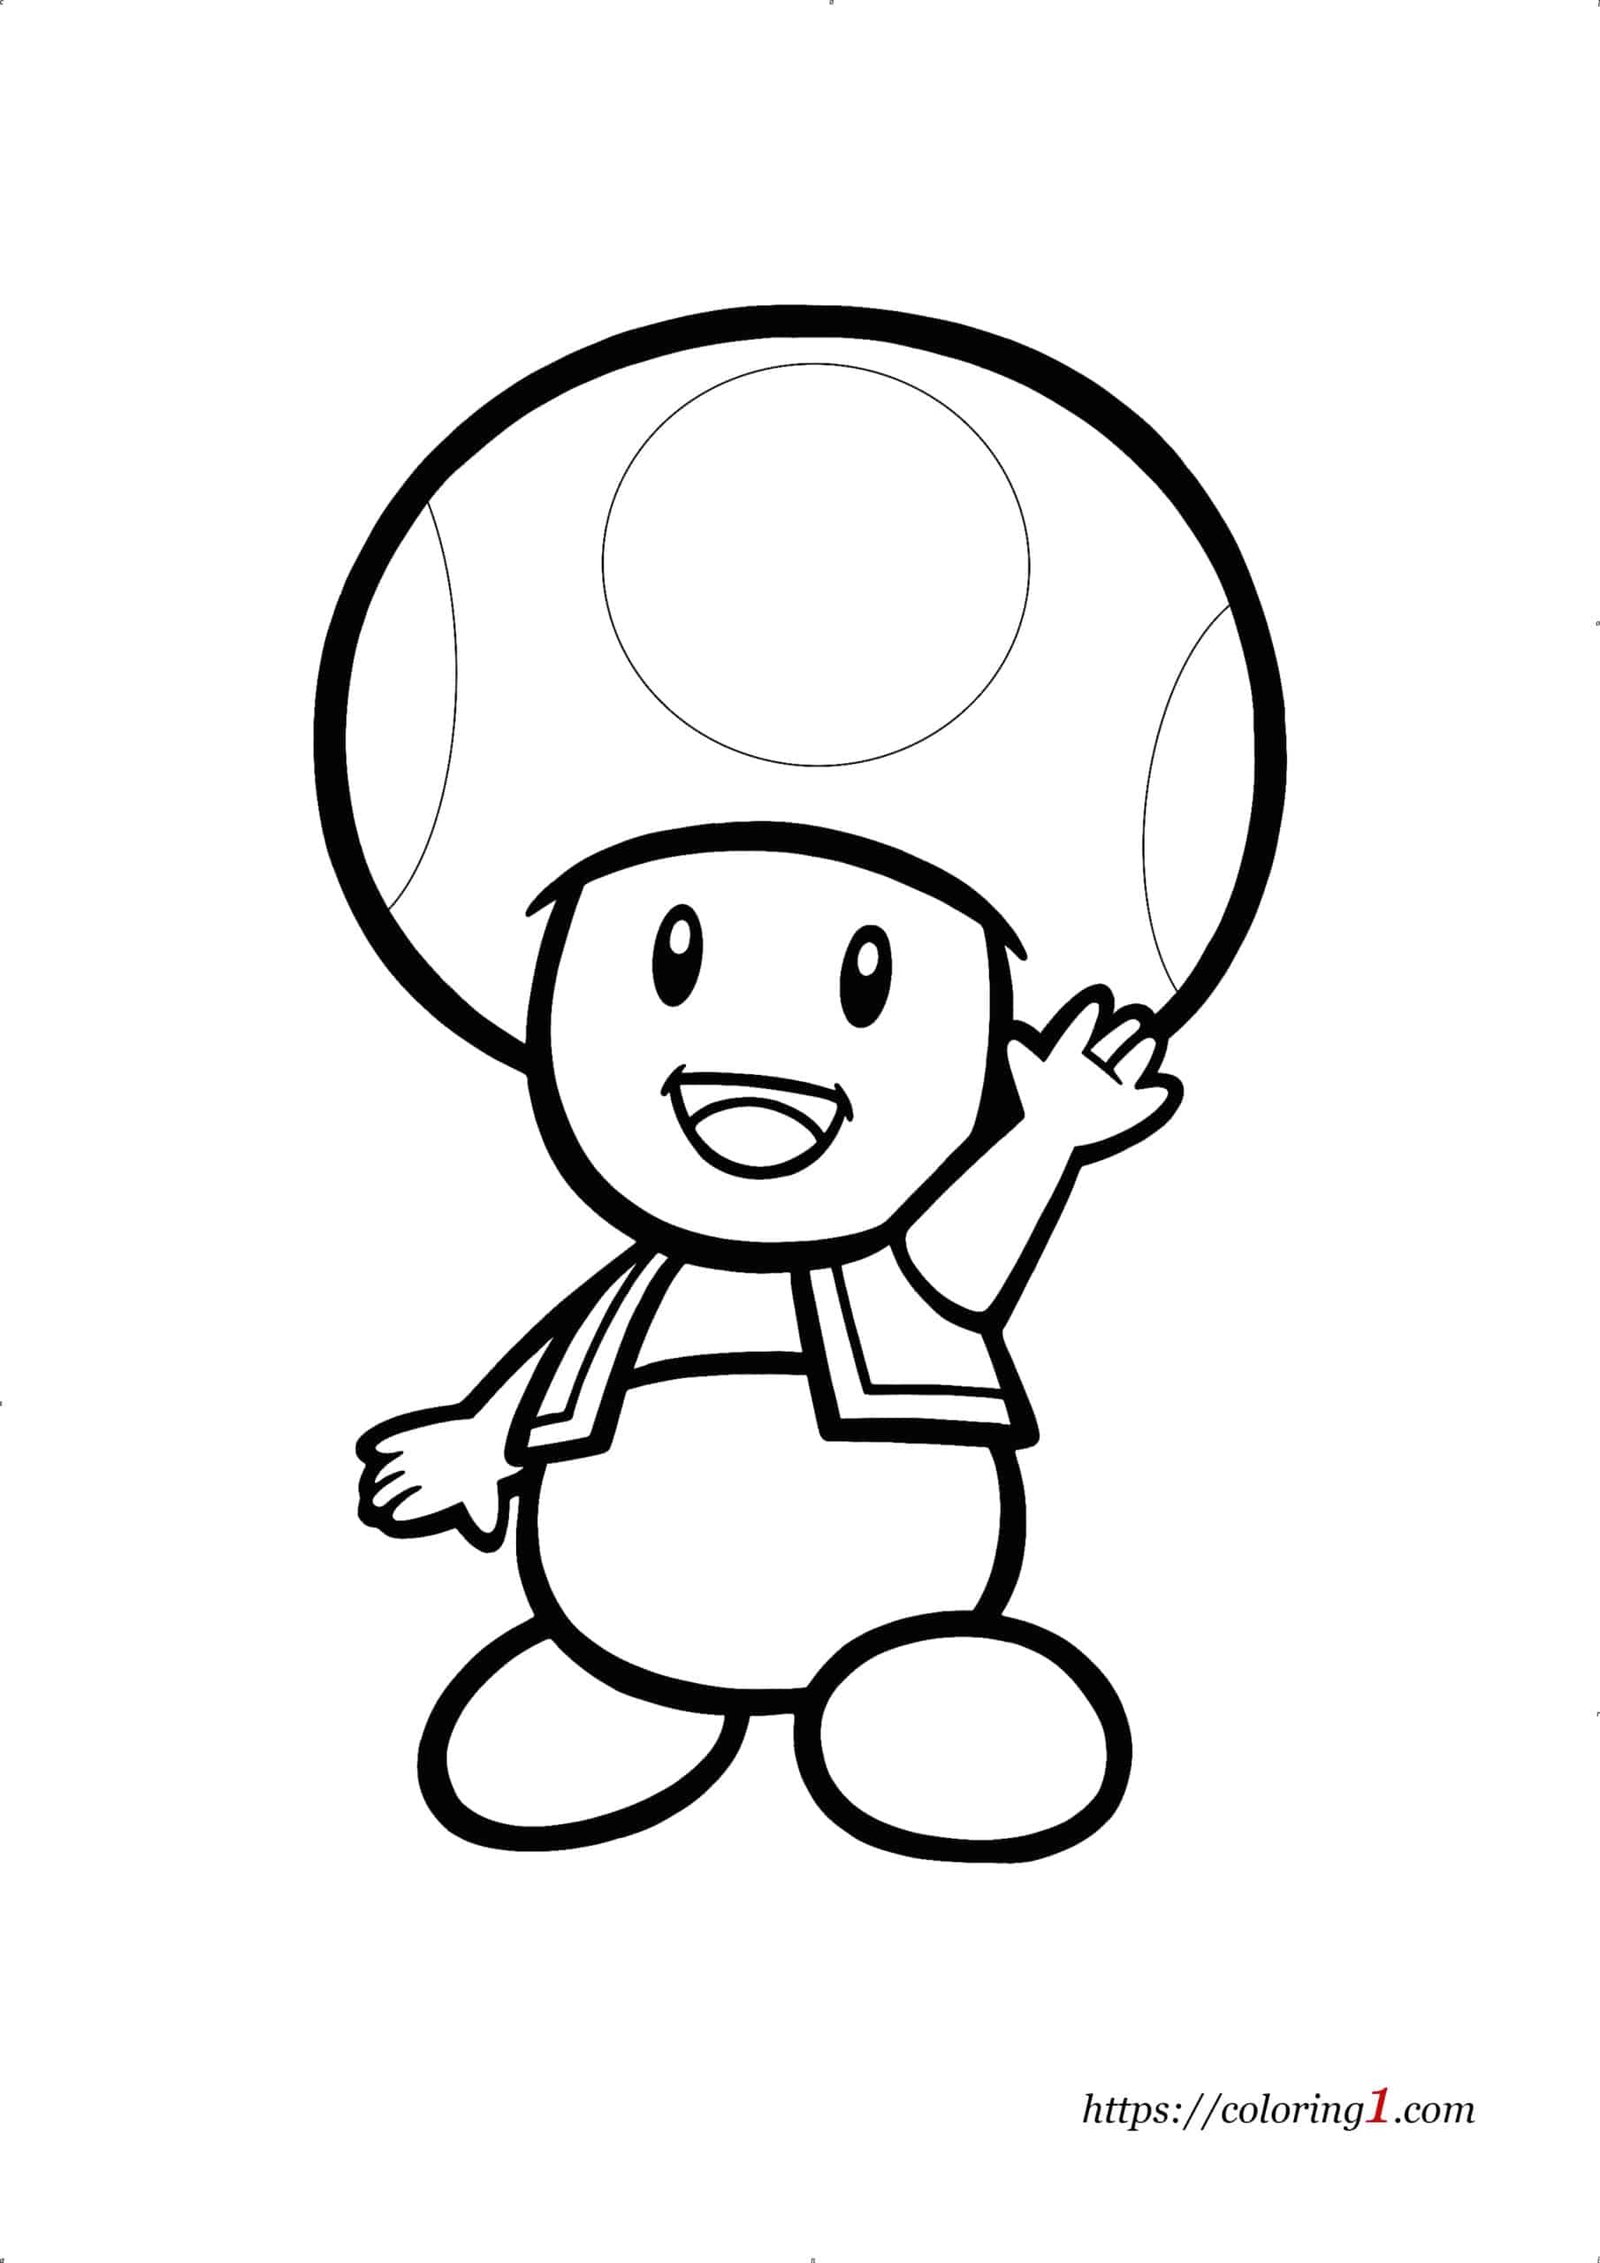 Toad Mario coloring page